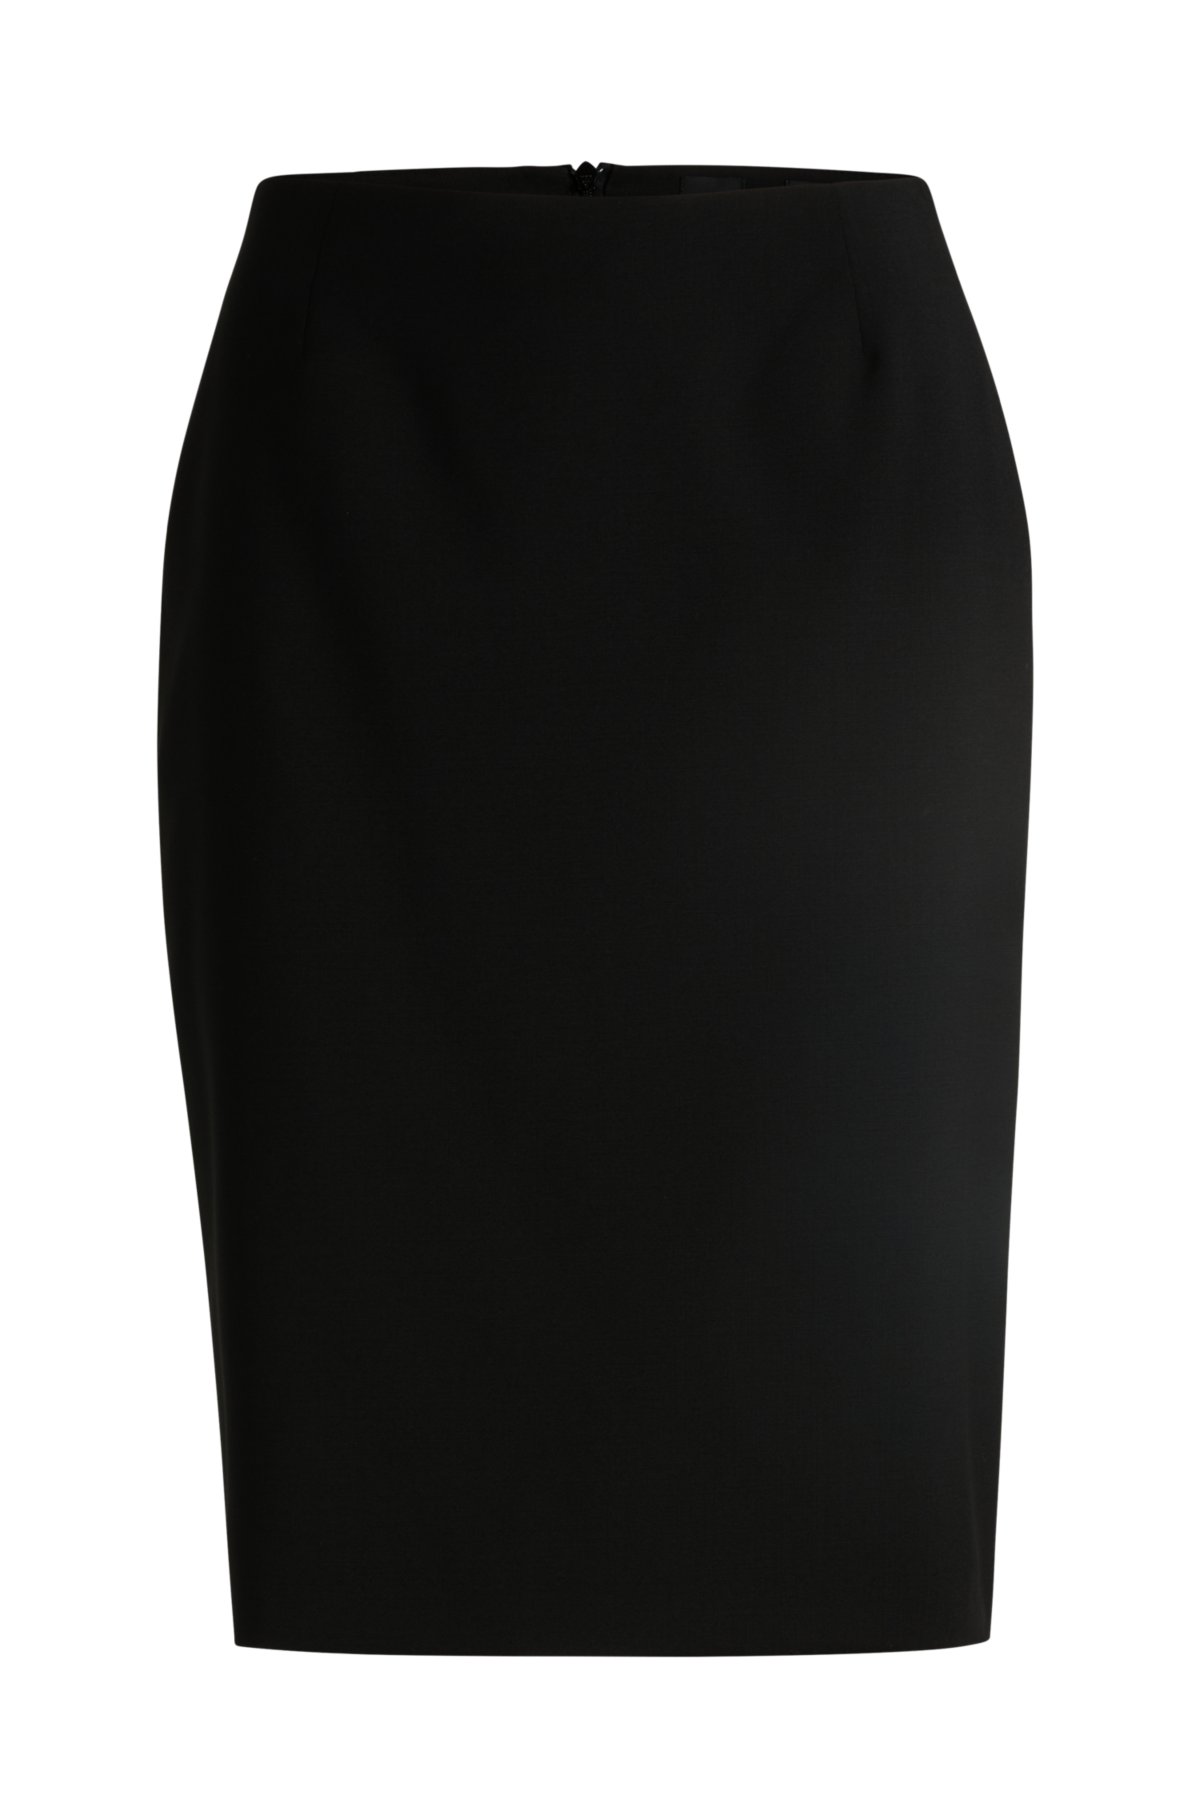 Slim-fit pencil skirt in virgin wool, Black